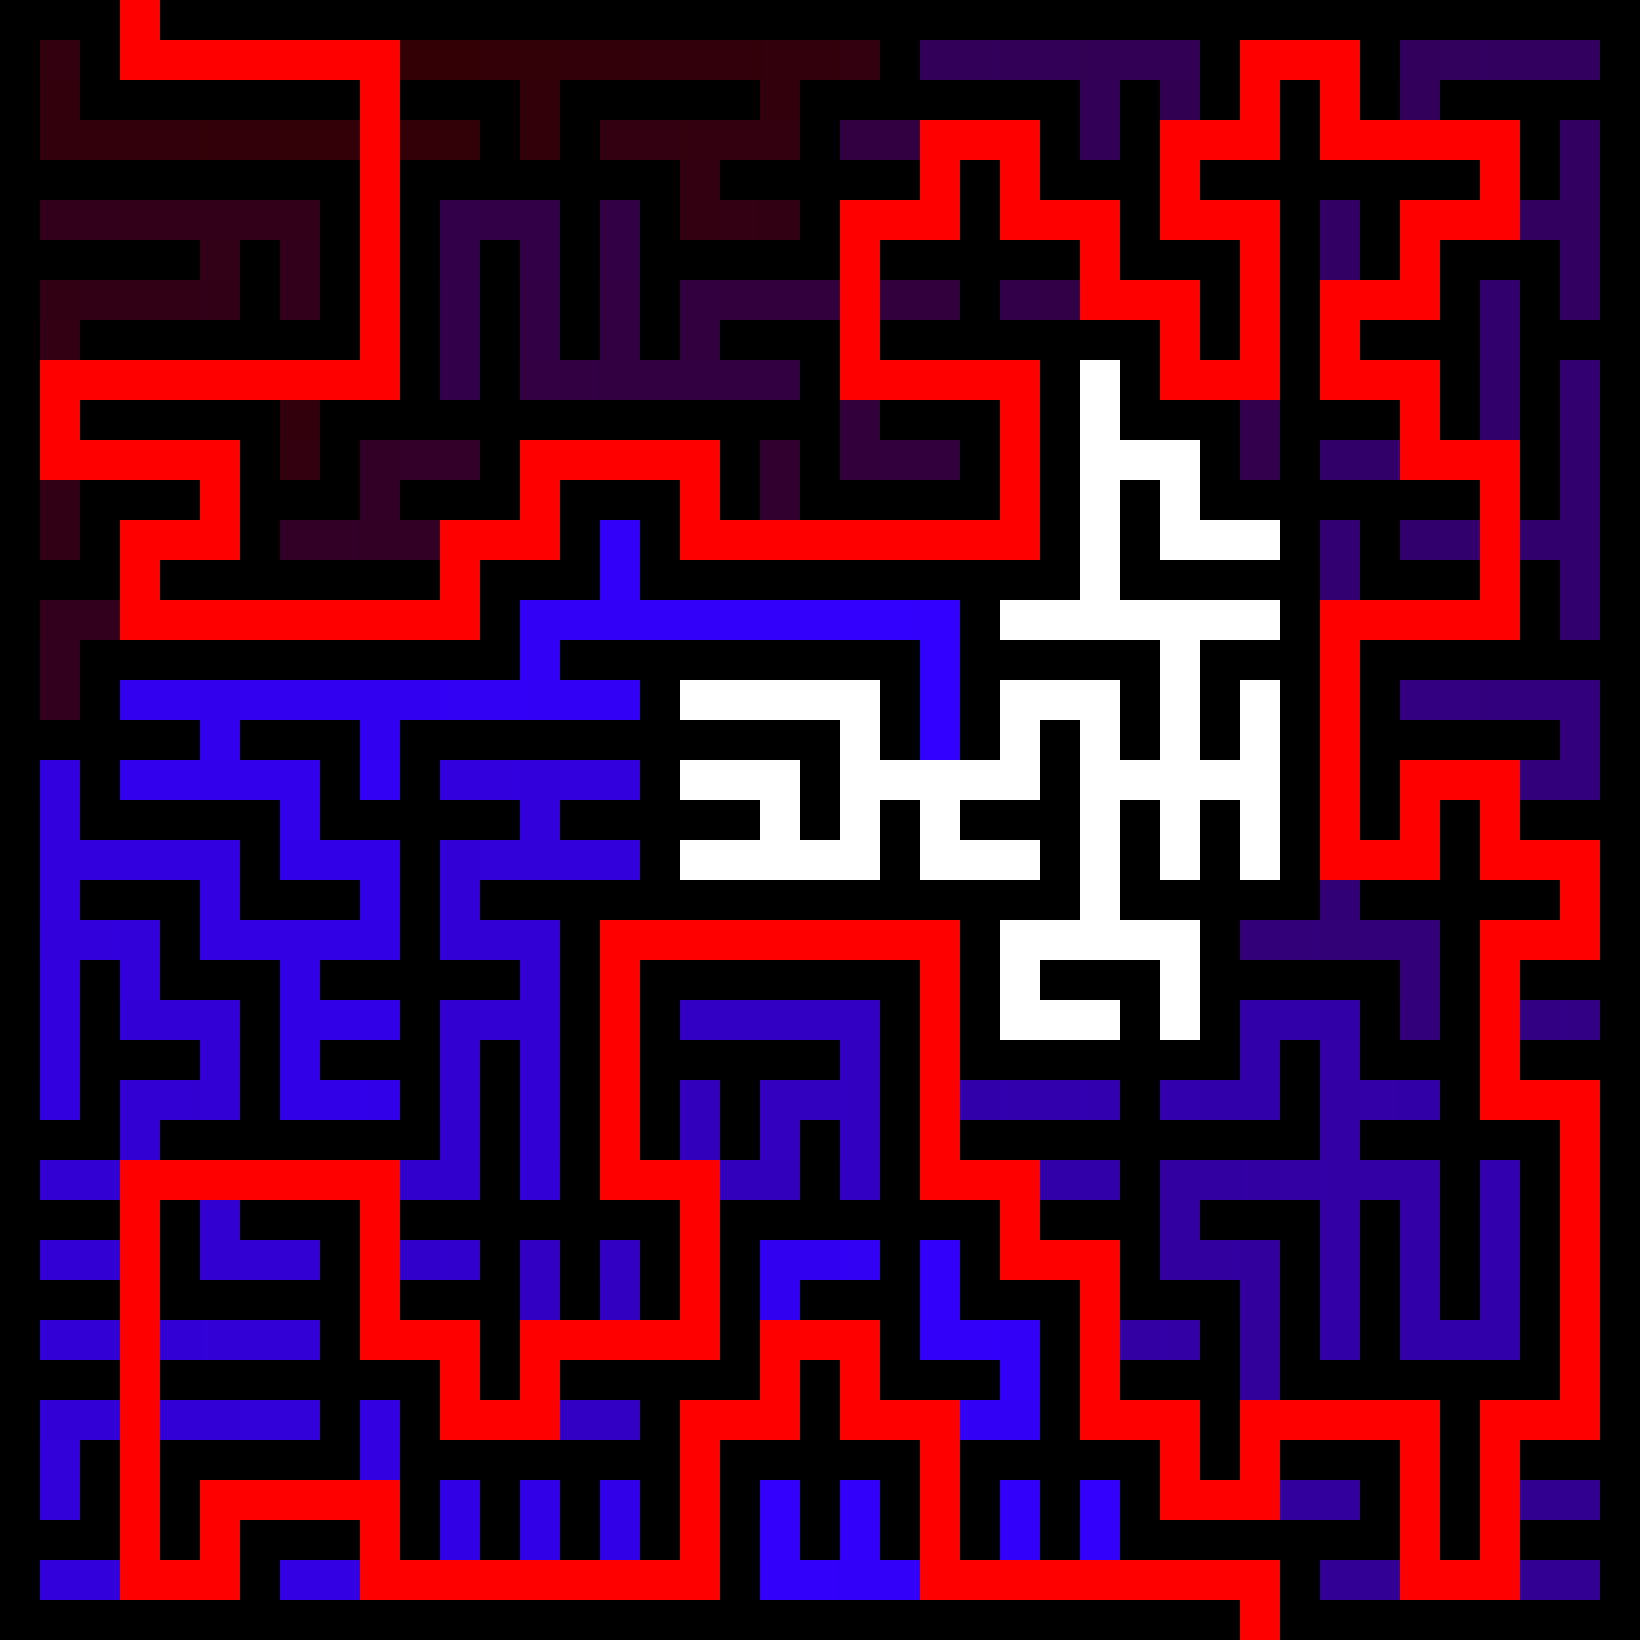 maze-solving_normal_solved_enlarged.png